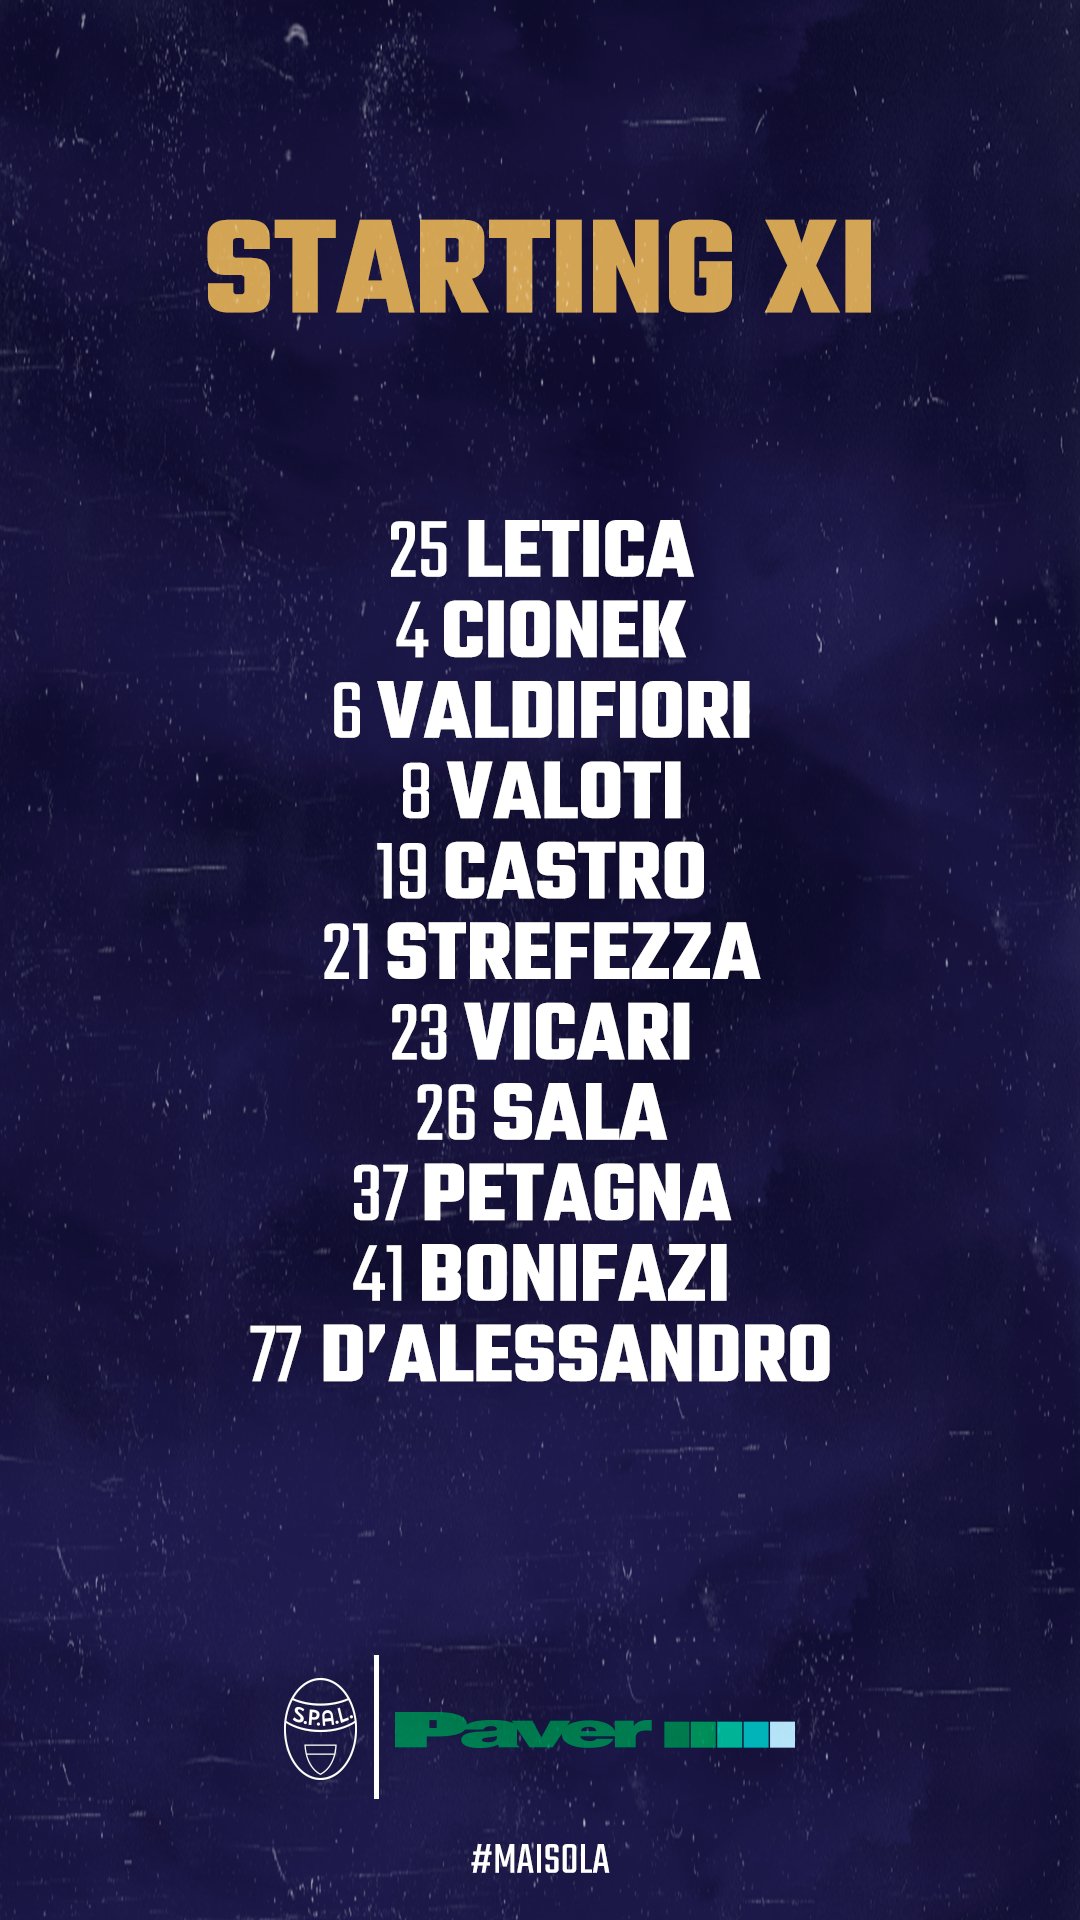 L'11 iniziale scelto da Di Biagio per affrontare il Cagliari questa sera.